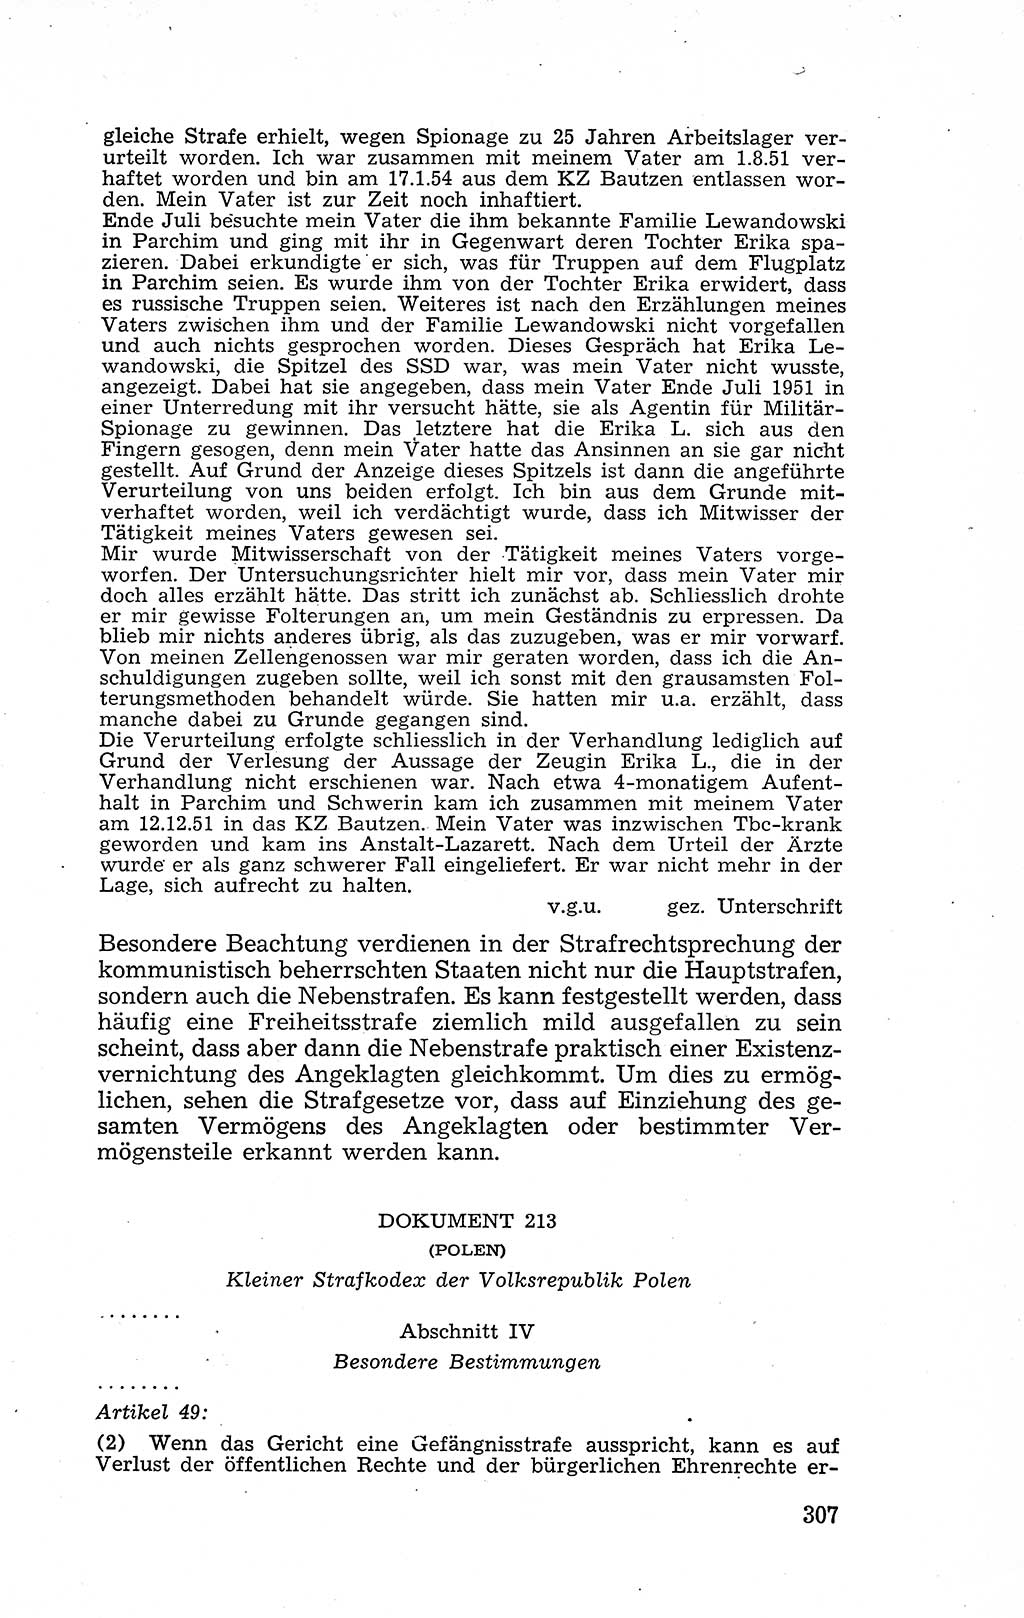 Recht in Fesseln, Dokumente, Internationale Juristen-Kommission [Bundesrepublik Deutschland (BRD)] 1955, Seite 307 (R. Dok. IJK BRD 1955, S. 307)